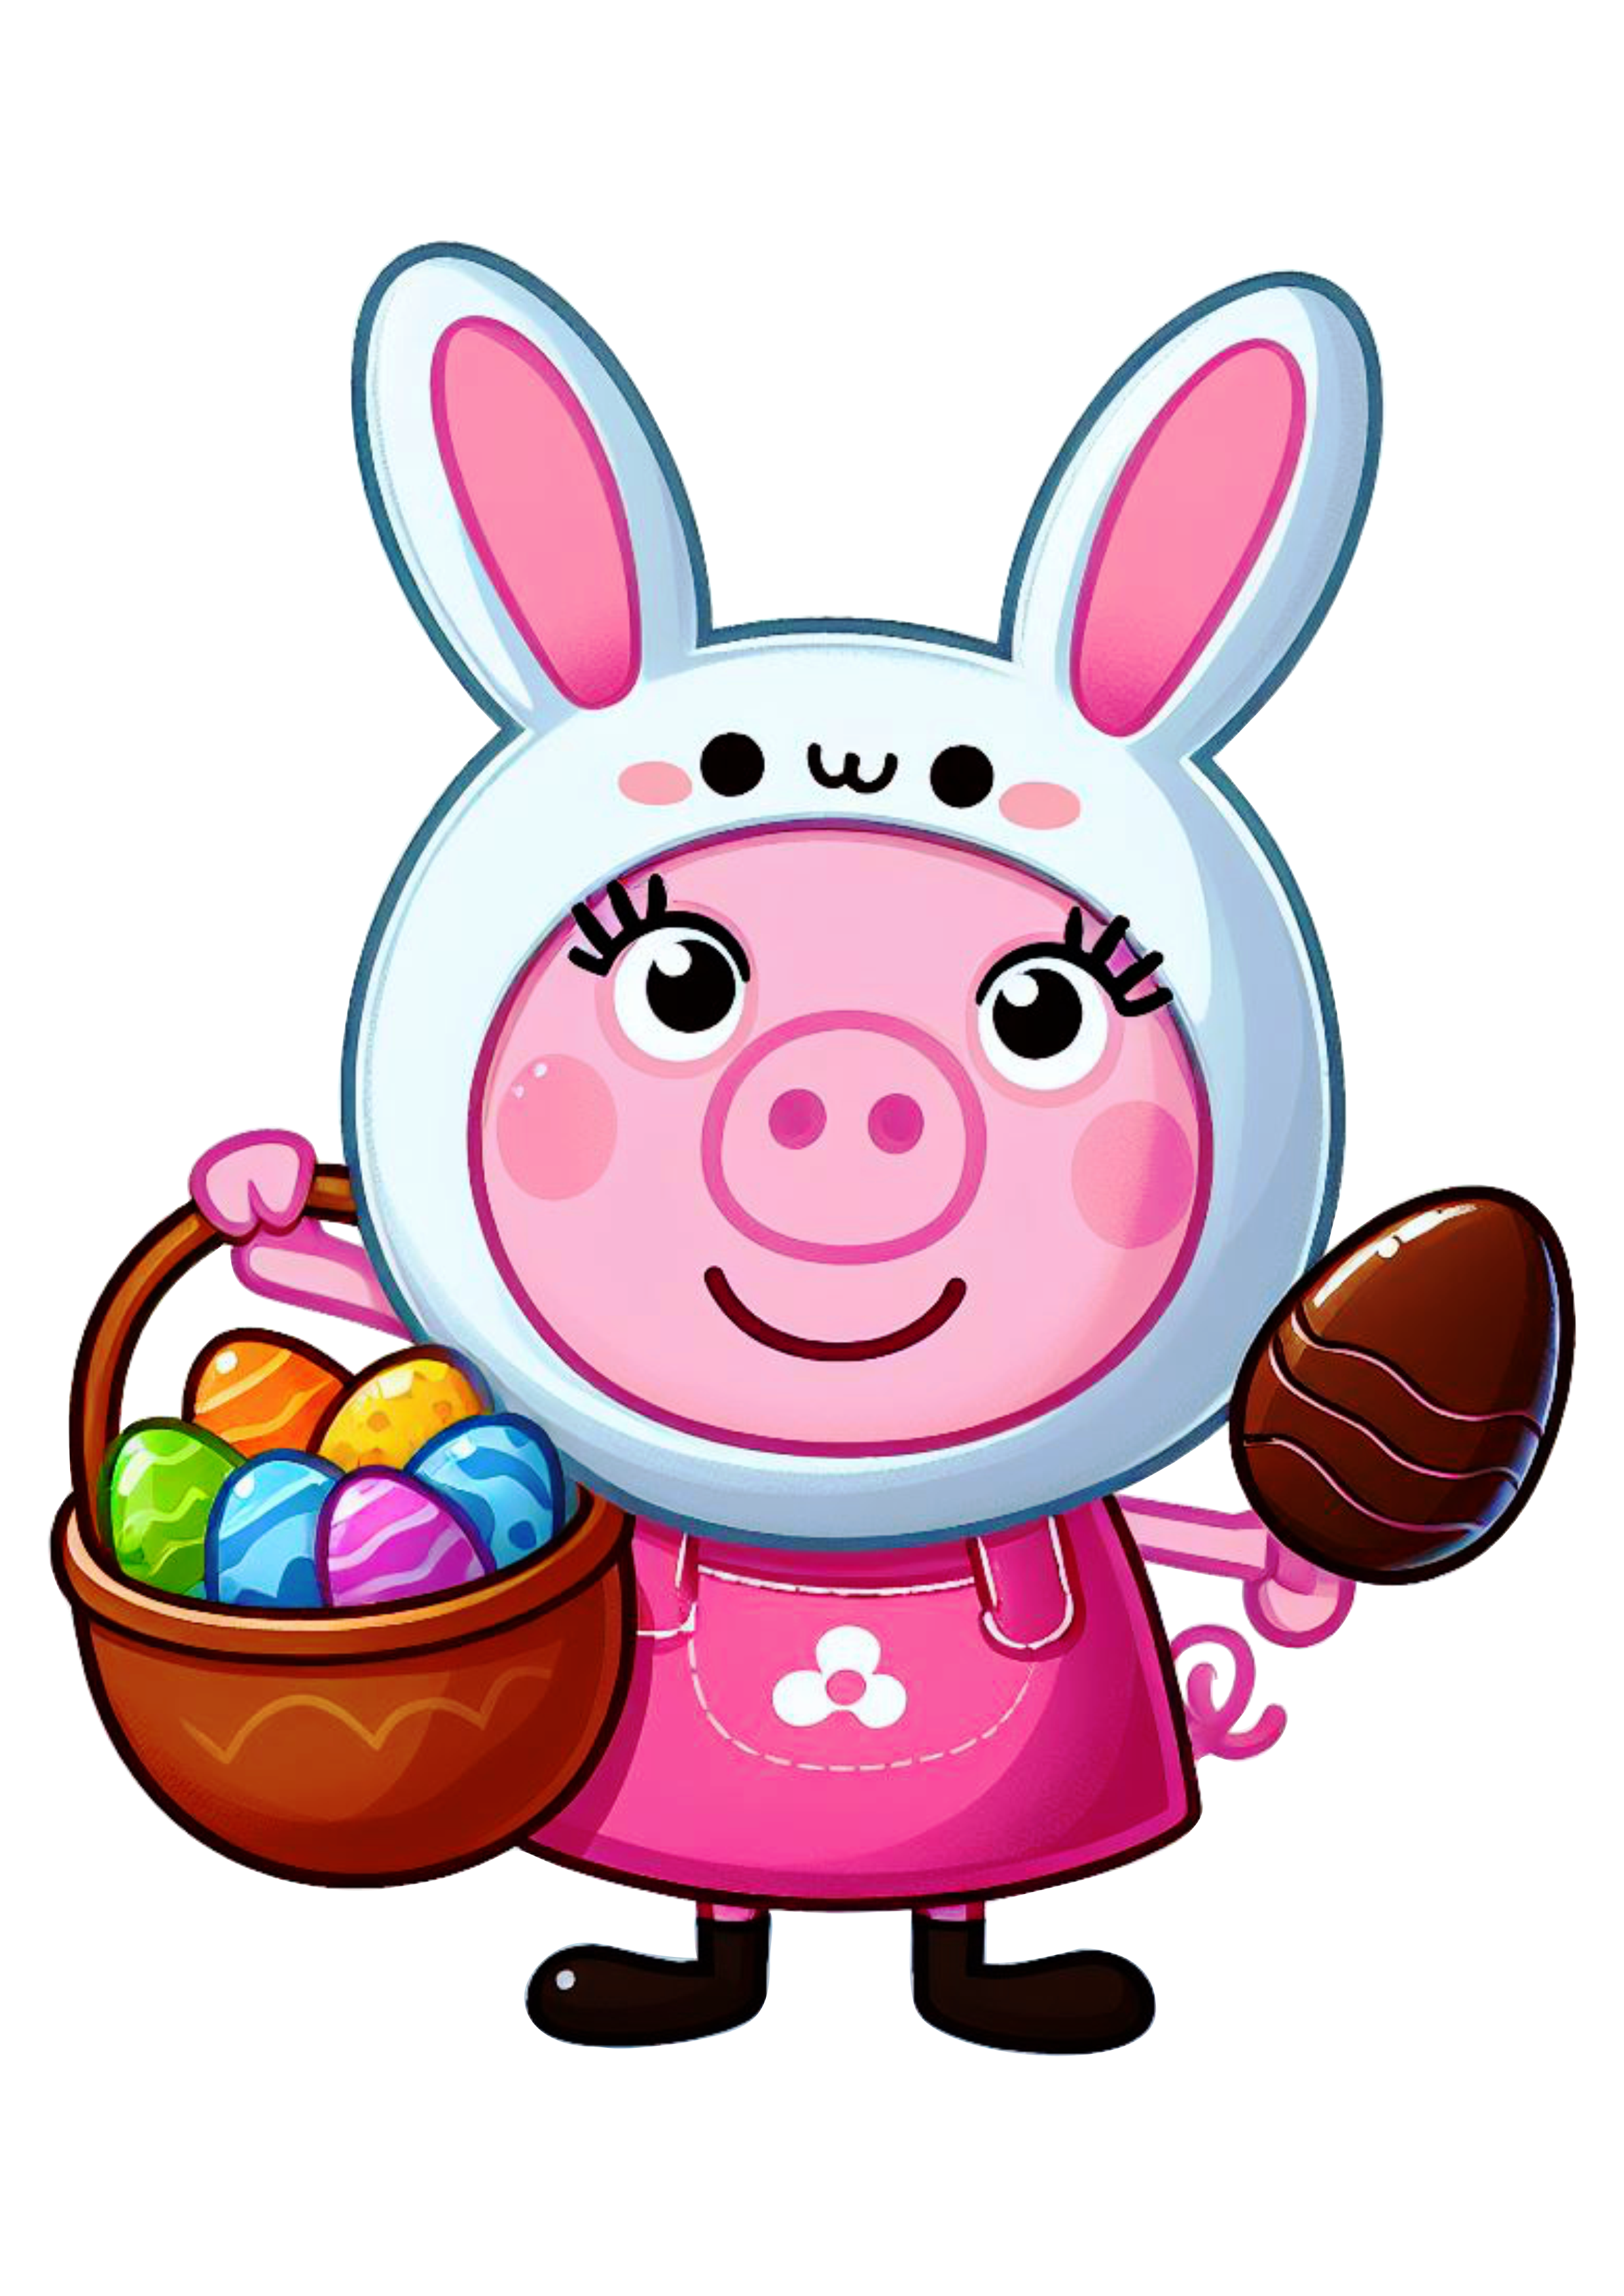 Peppa pig com fantasia de coelhinho branco com ovos de chocolate assistir online png